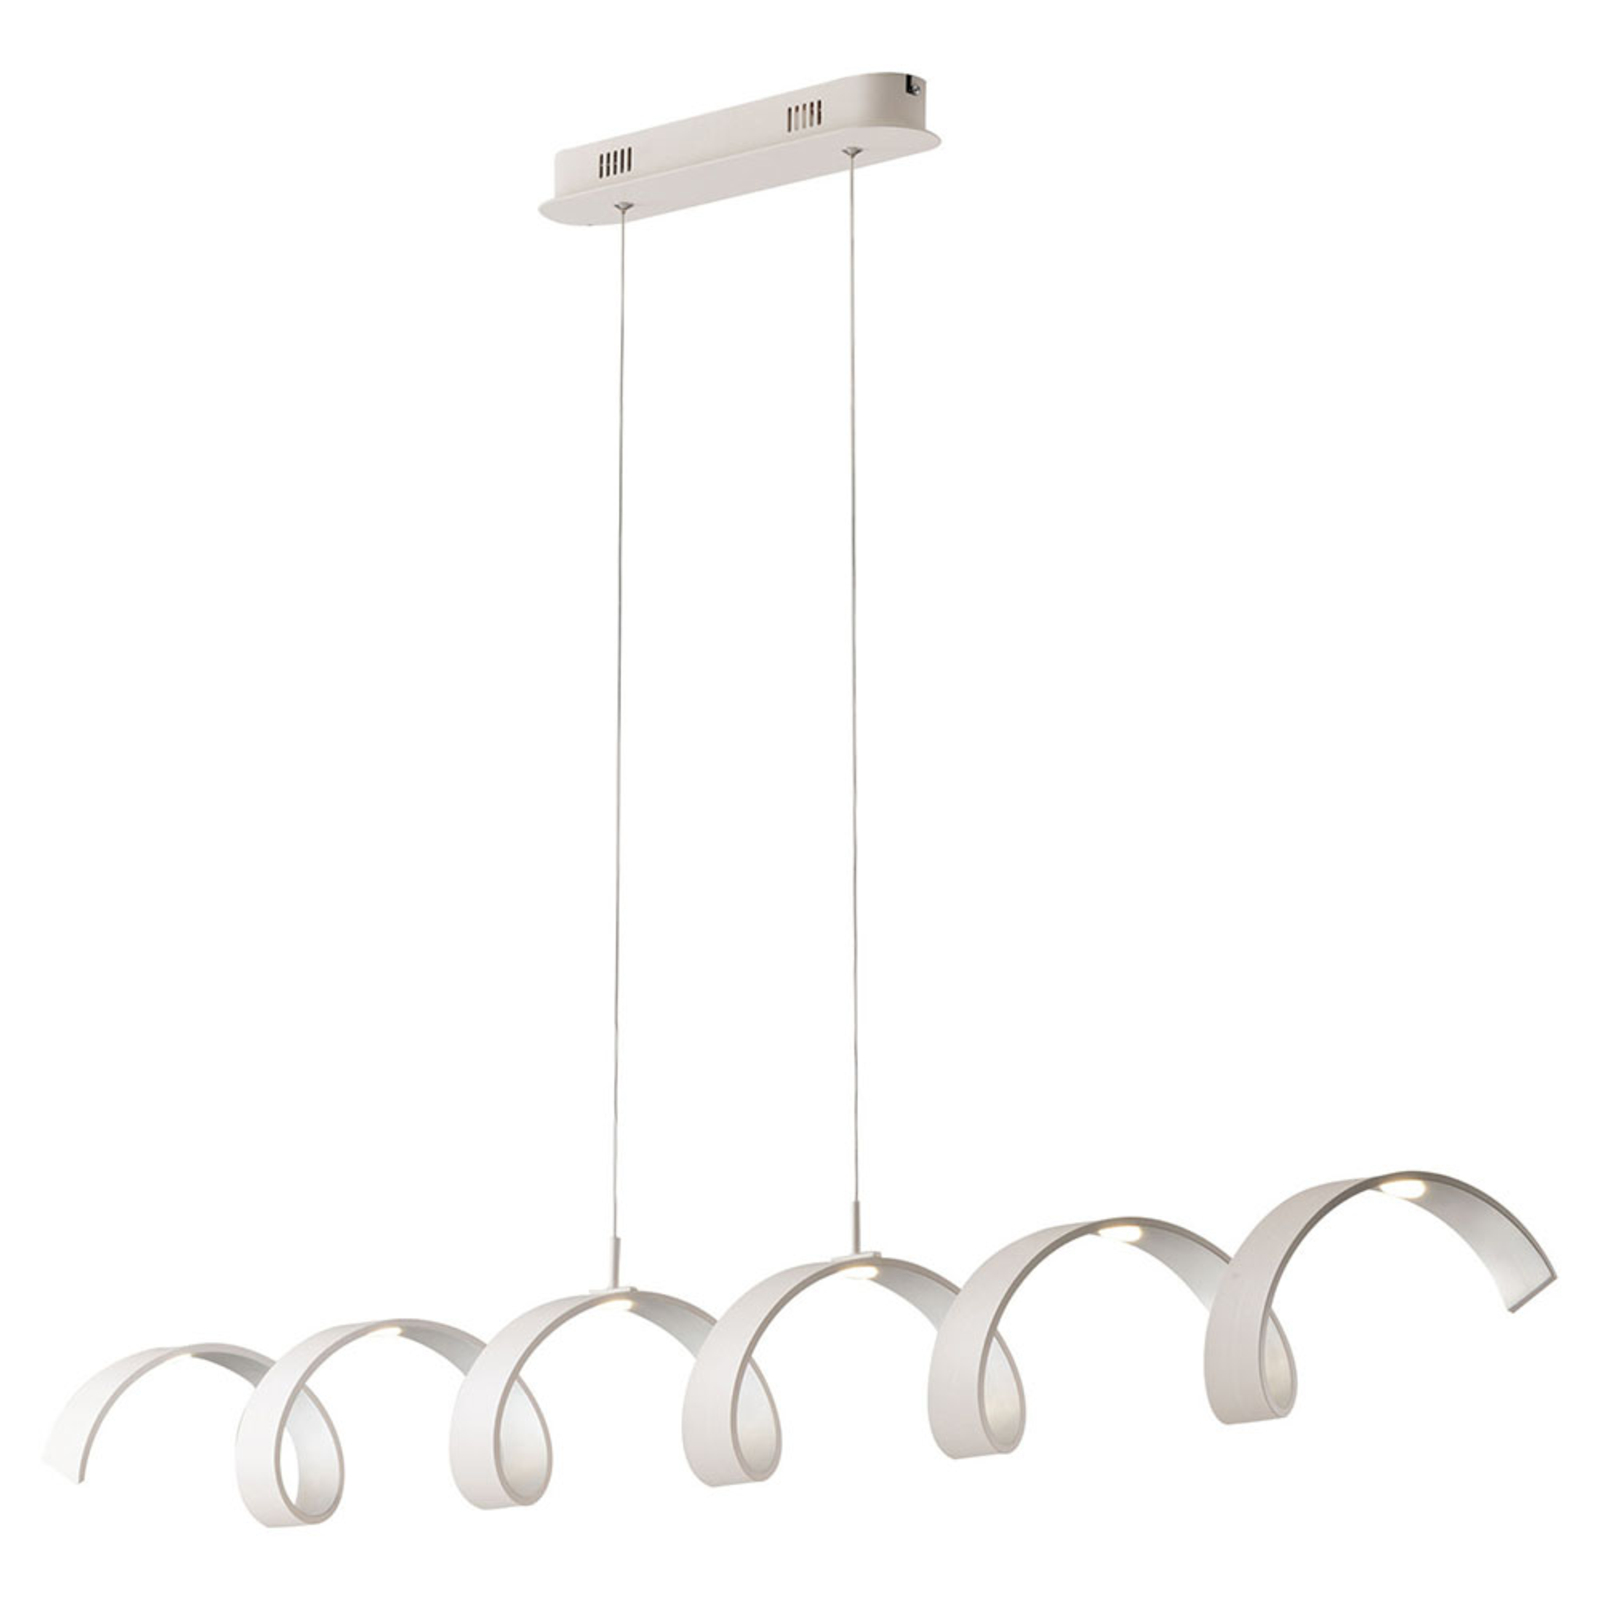 LED hanglamp Helix, wit-zilver, lengte 125 cm